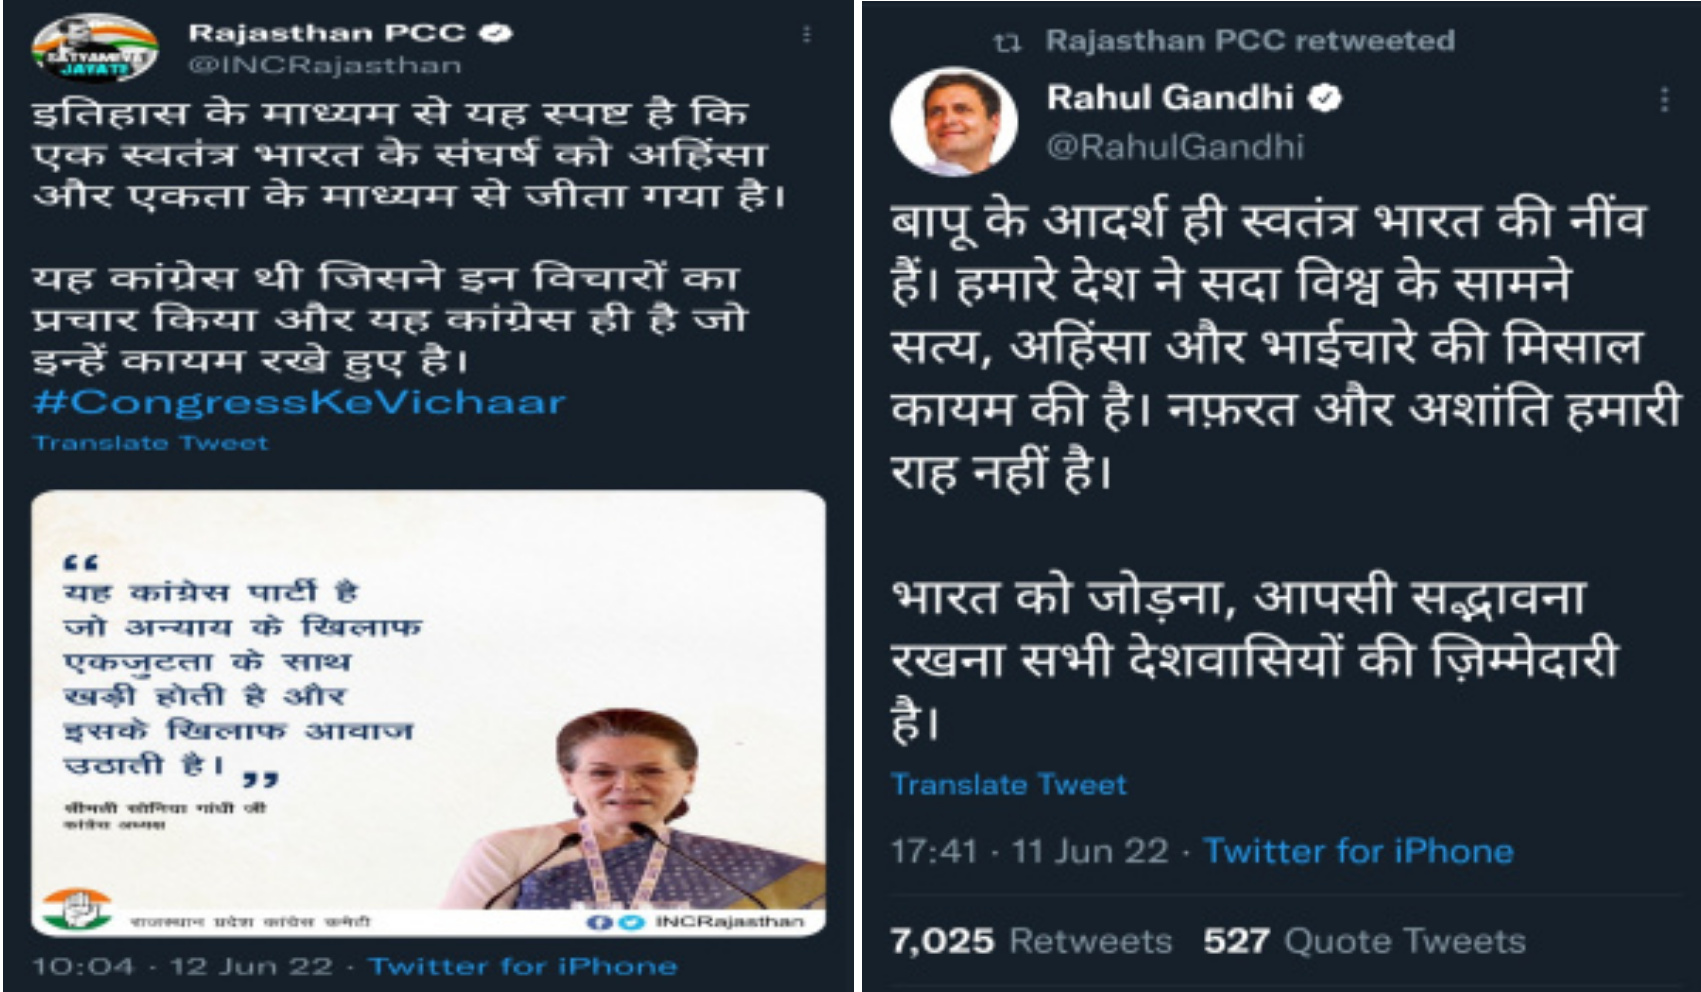 प्रदेश कांग्रेस कमेटी द्वारा ट्वीट किया गया सँघर्ष को परम्परा बताता सोनिया गांधी का सन्देश और रिट्वीट किया गांधीवाद की दुहाई देने वाला राहुल गांधी का सन्देश